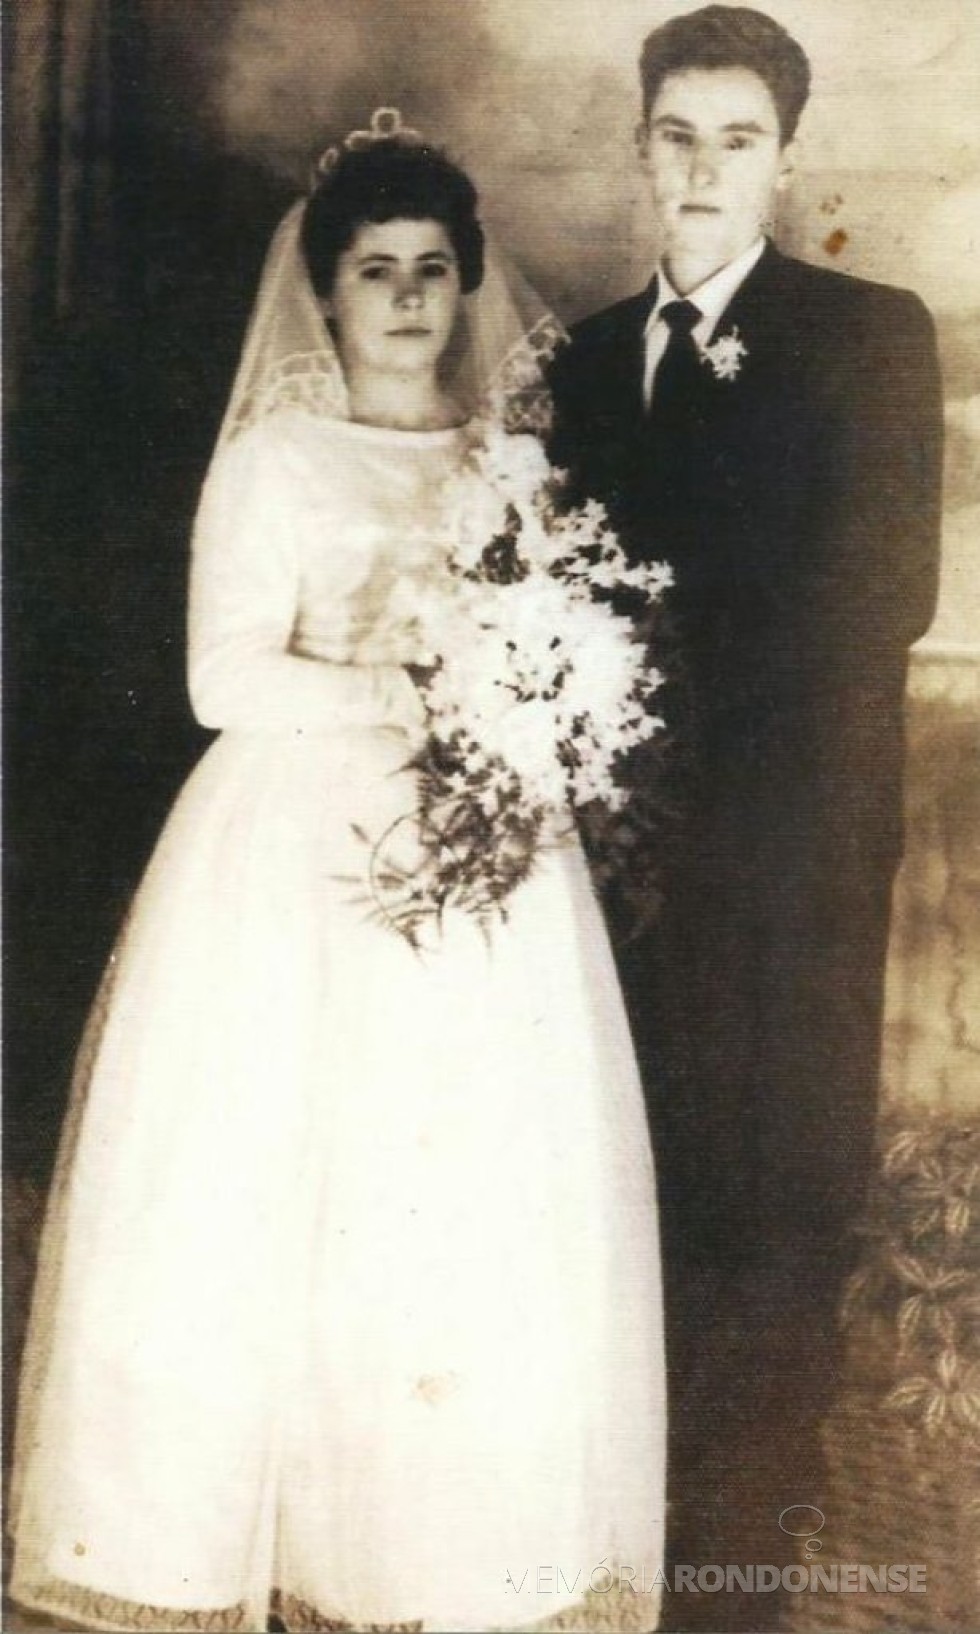 Os noivos Rozalina Cecília Parizotto e Anildo Cemin que se casaram em maio de 1963.
Imagens:  Acerco do casal - FOTO 3 -